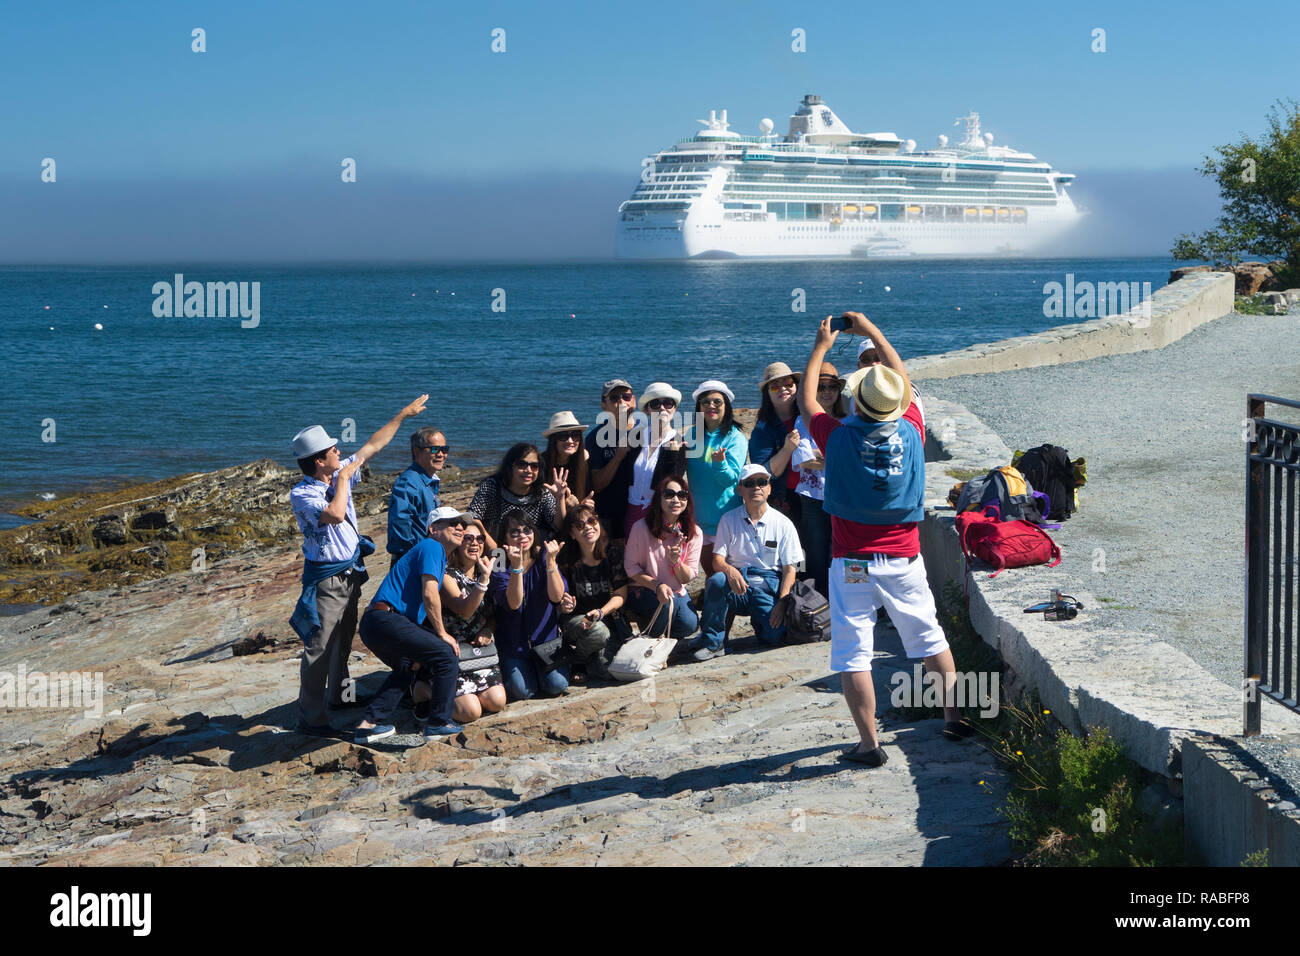 Asiatische Touristen ein Gruppenbild mit einem Kreuzfahrtschiff im Hintergrund, Bar Harbor, Maine, USA. Stockfoto